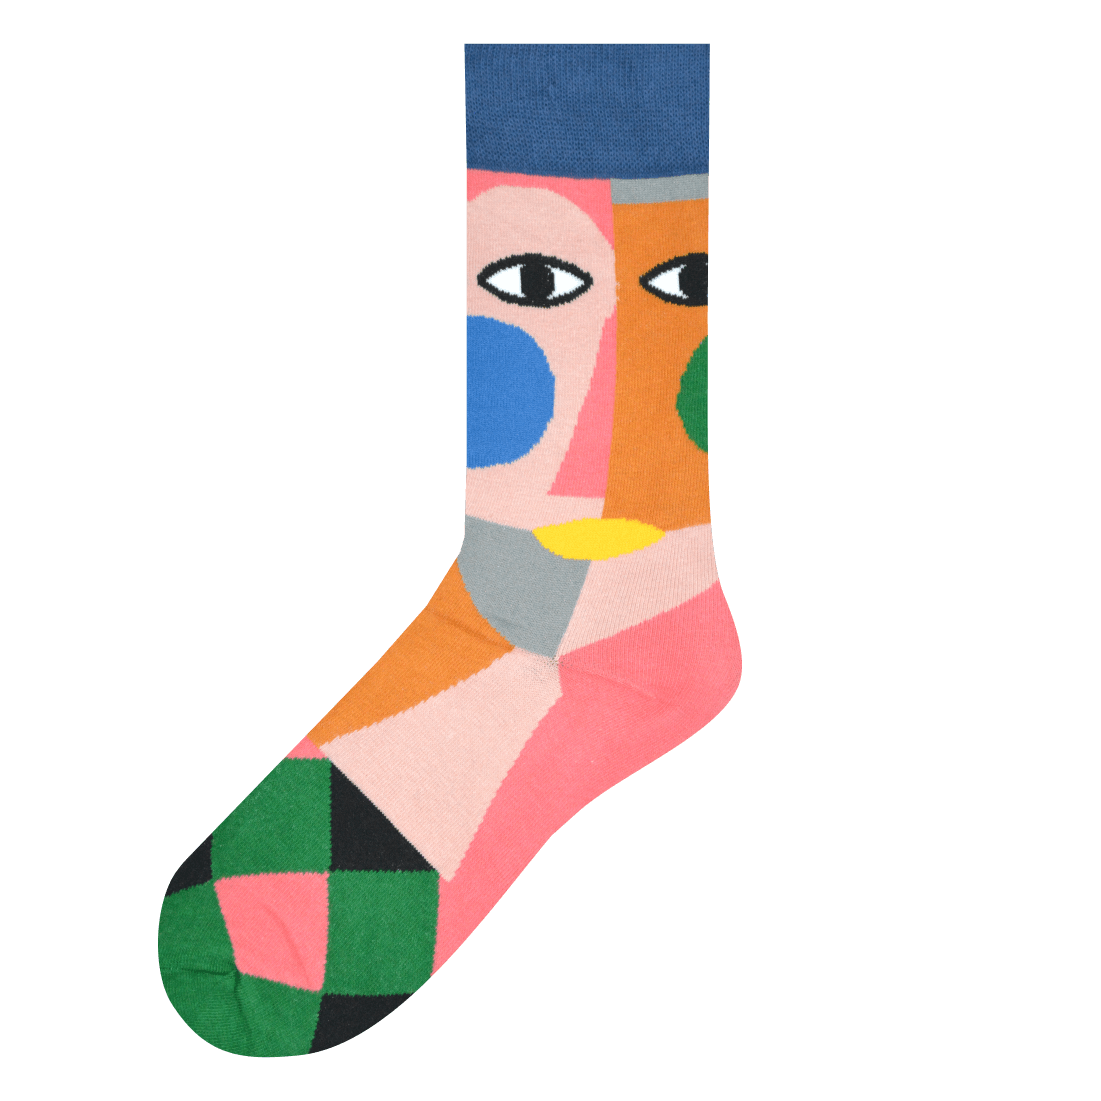 Medias Locas calcetines divertidos de diseño de cubismo Freaky Socks